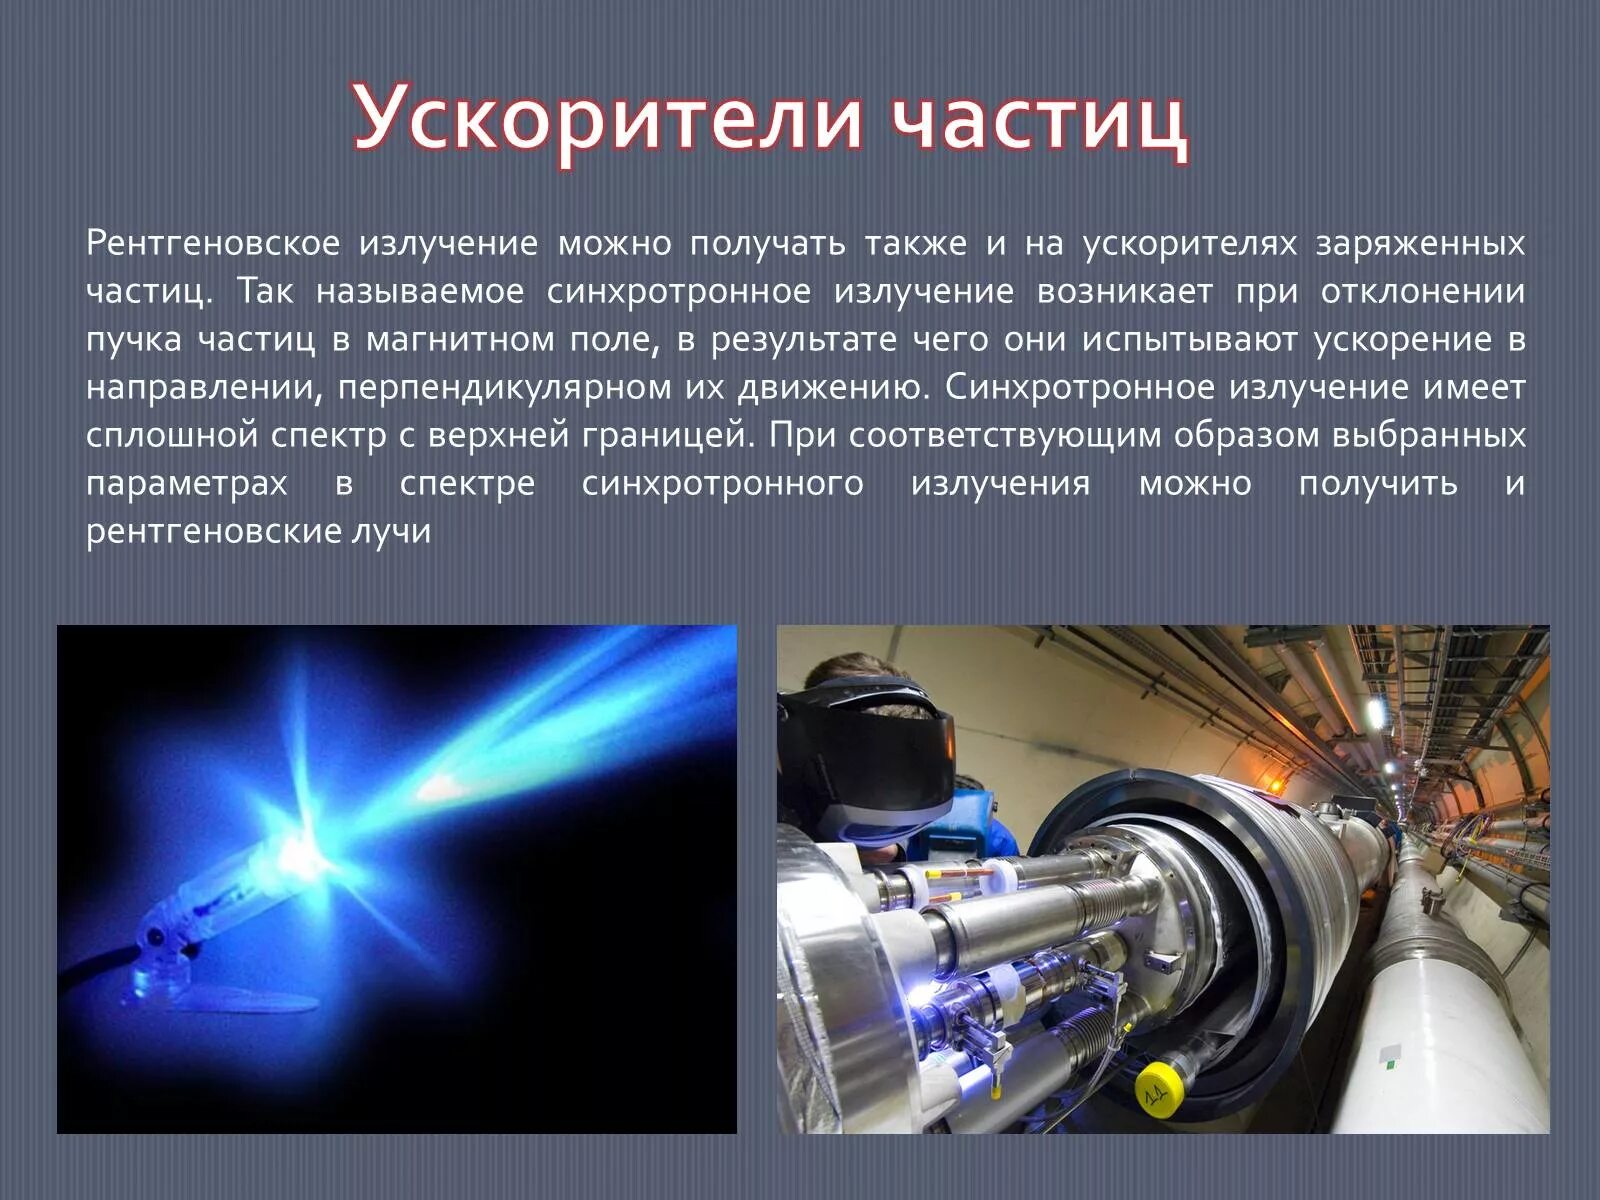 Магнитное поле в ускорителях заряженных частиц. Принцип работы ускорителя заряженных частиц. Циклотрон - ускоритель заряженных частиц. Линейный ускоритель элементарных частиц. Ускорители частиц и рентгеновское излучение.